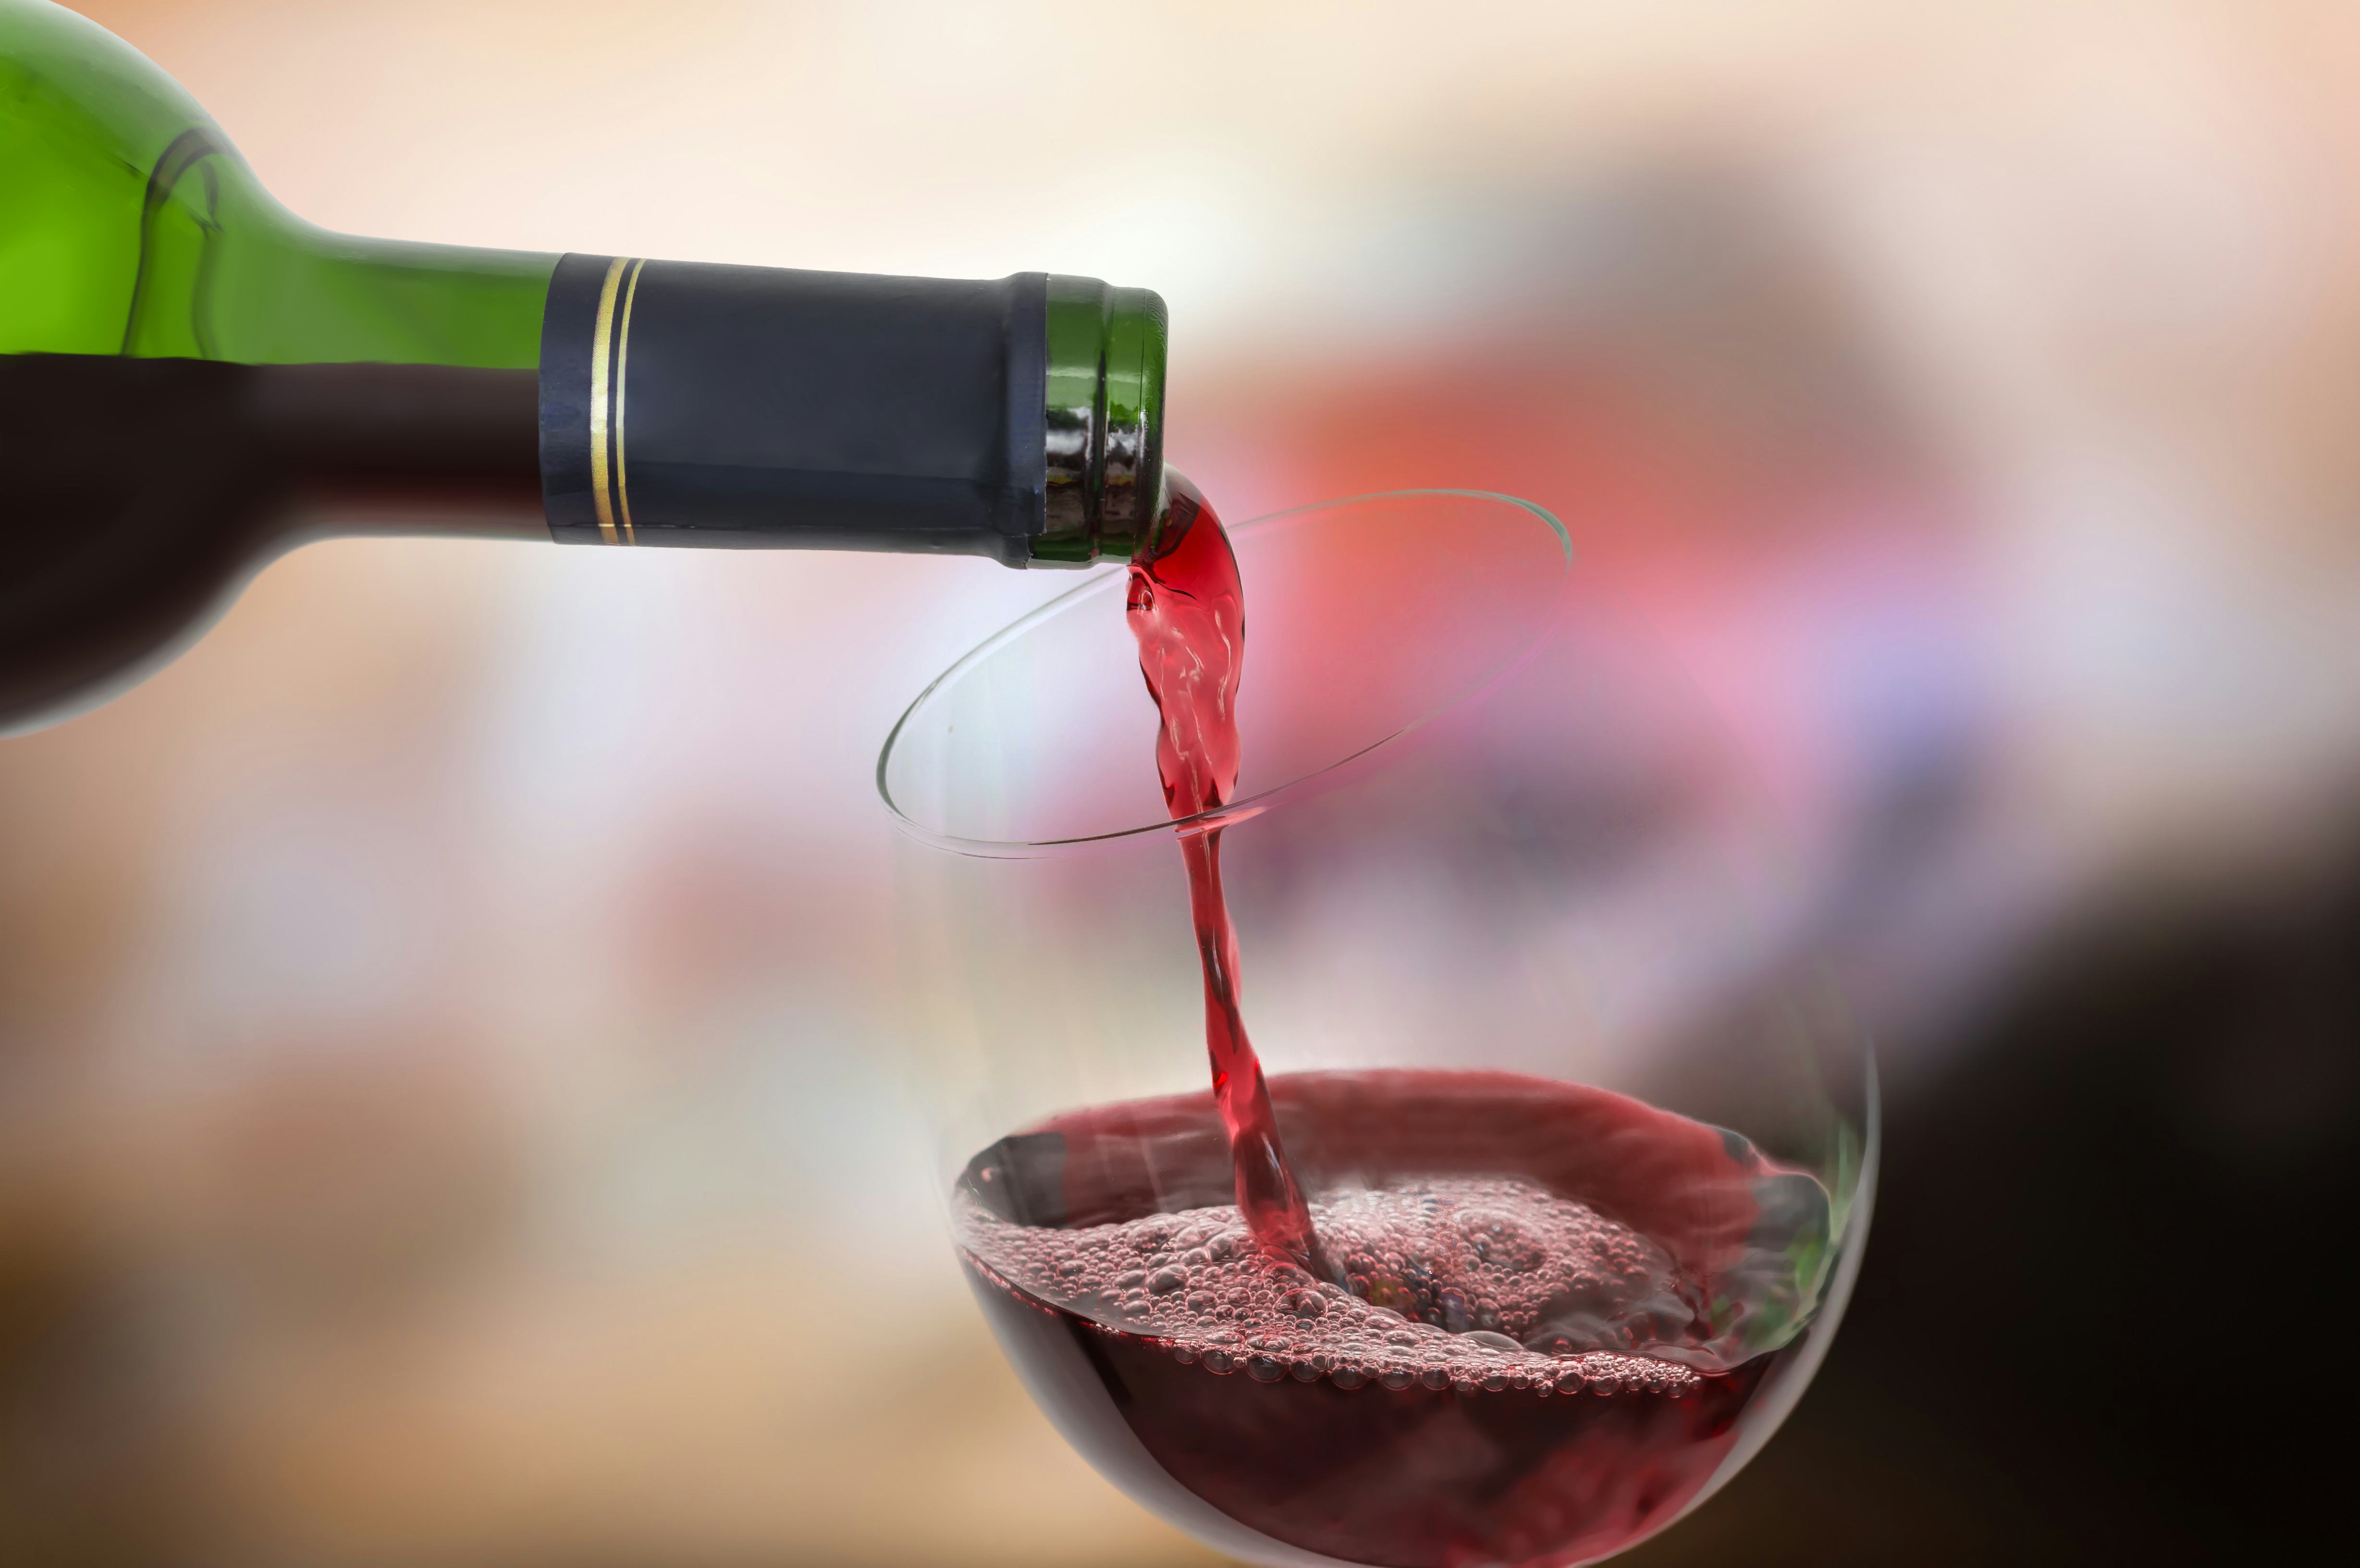 Medewerker schenkt per ongeluk peperdure wijn in restaurant